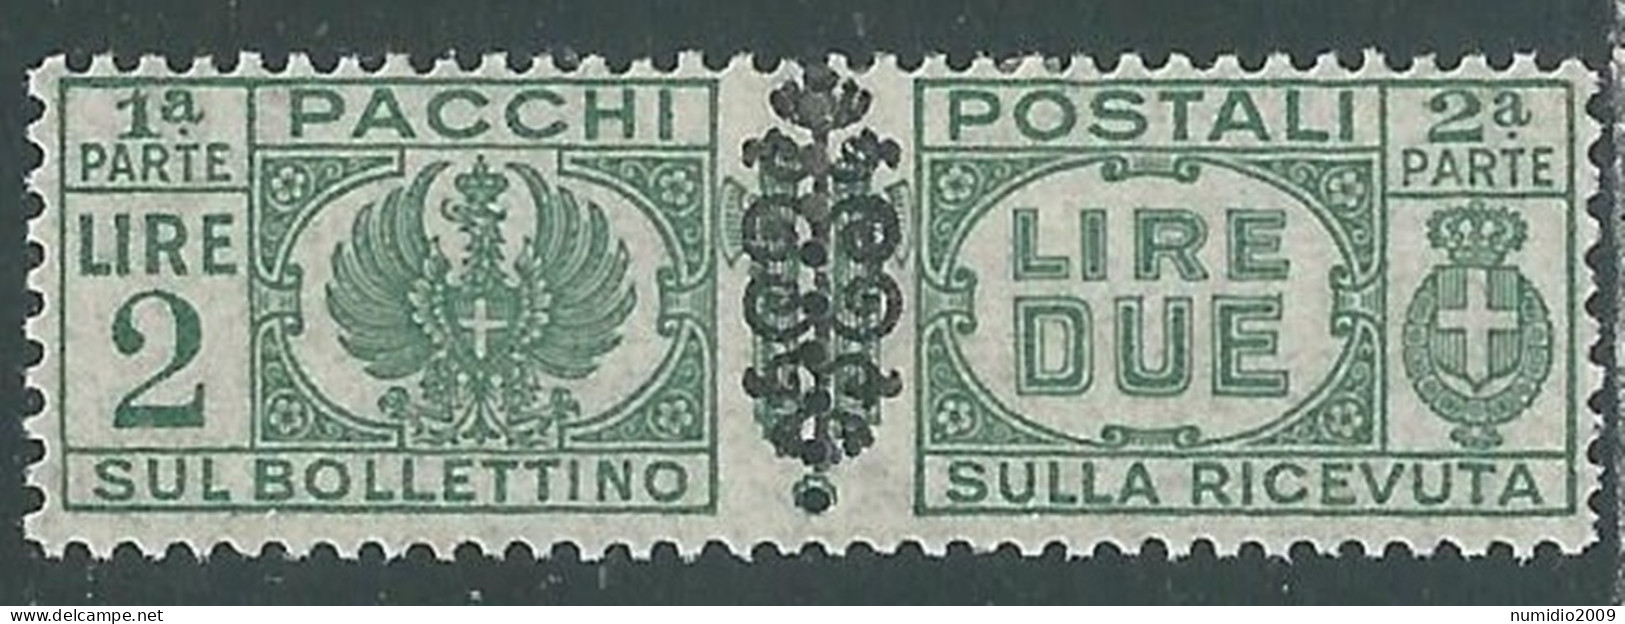 1945 LUOGOTENENZA PACCHI POSTALI 2 LIRE MH * - I18-6 - Pacchi Postali